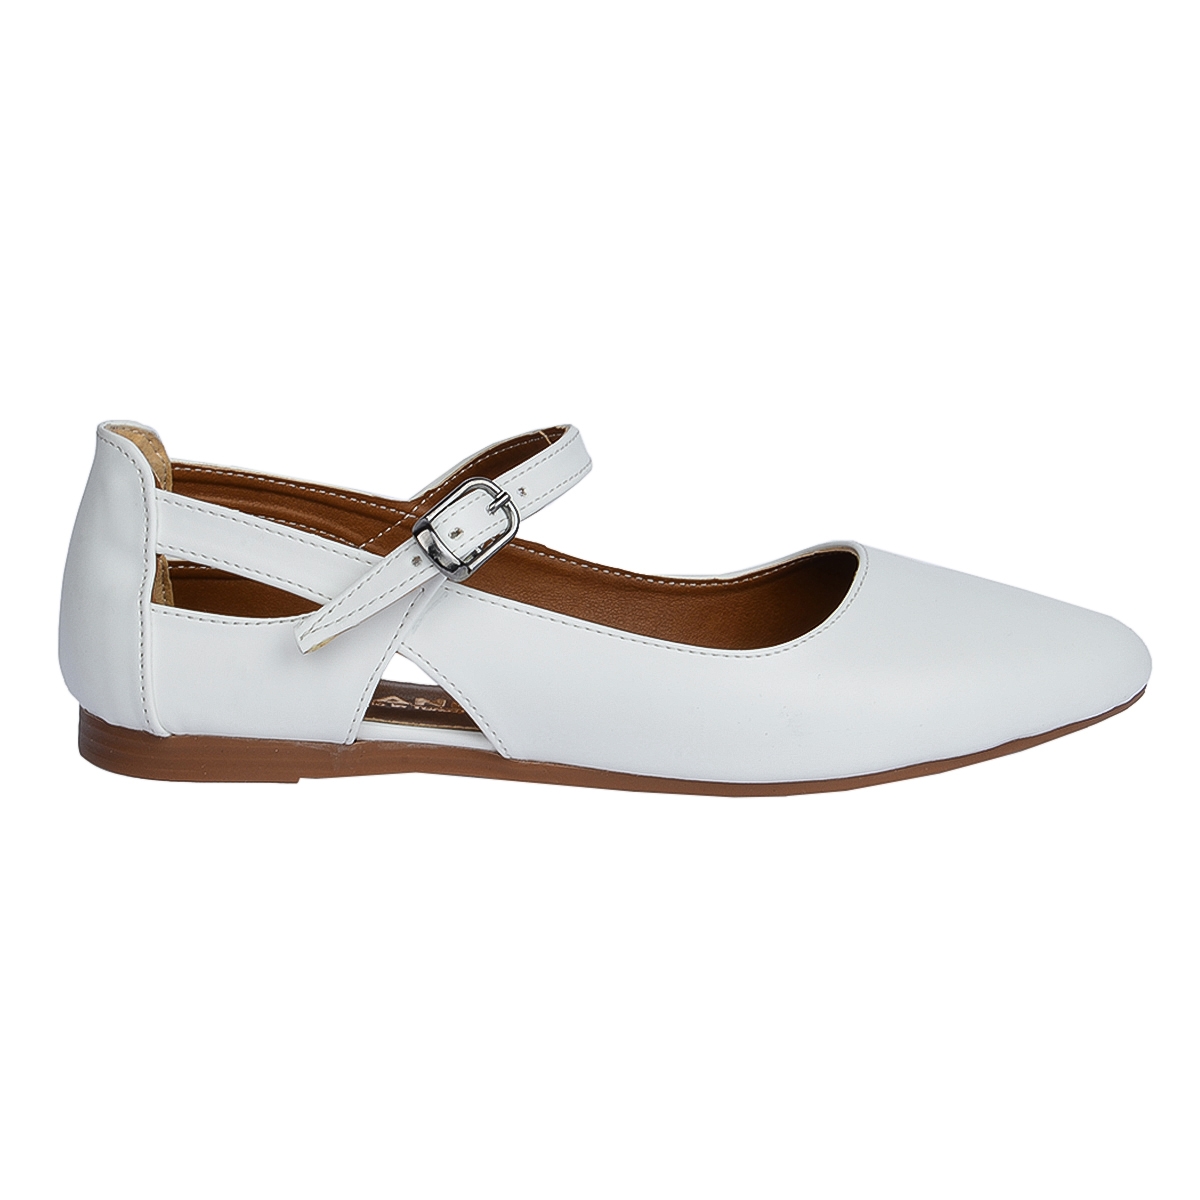 Flo 1920-201 Cilt Sandalet Bayan Babet Ayakkabı Beyaz. 3